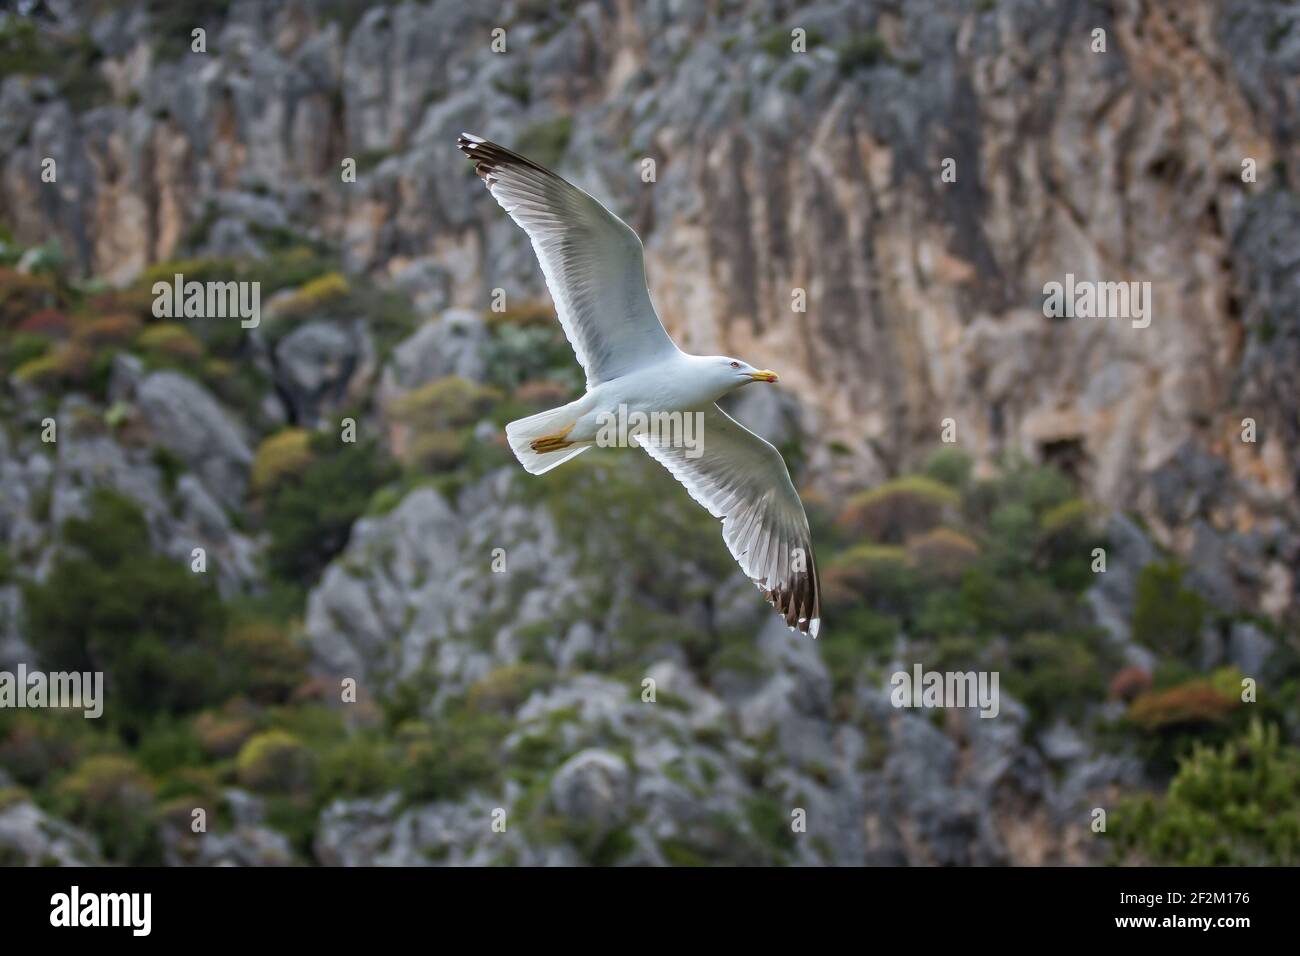 Wasservogel fliegt über die Klippen. Möwen fliegen an den Faraglioni Klippen auf der Insel Capri, Tyrrhenisches Meer, Italien Stockfoto